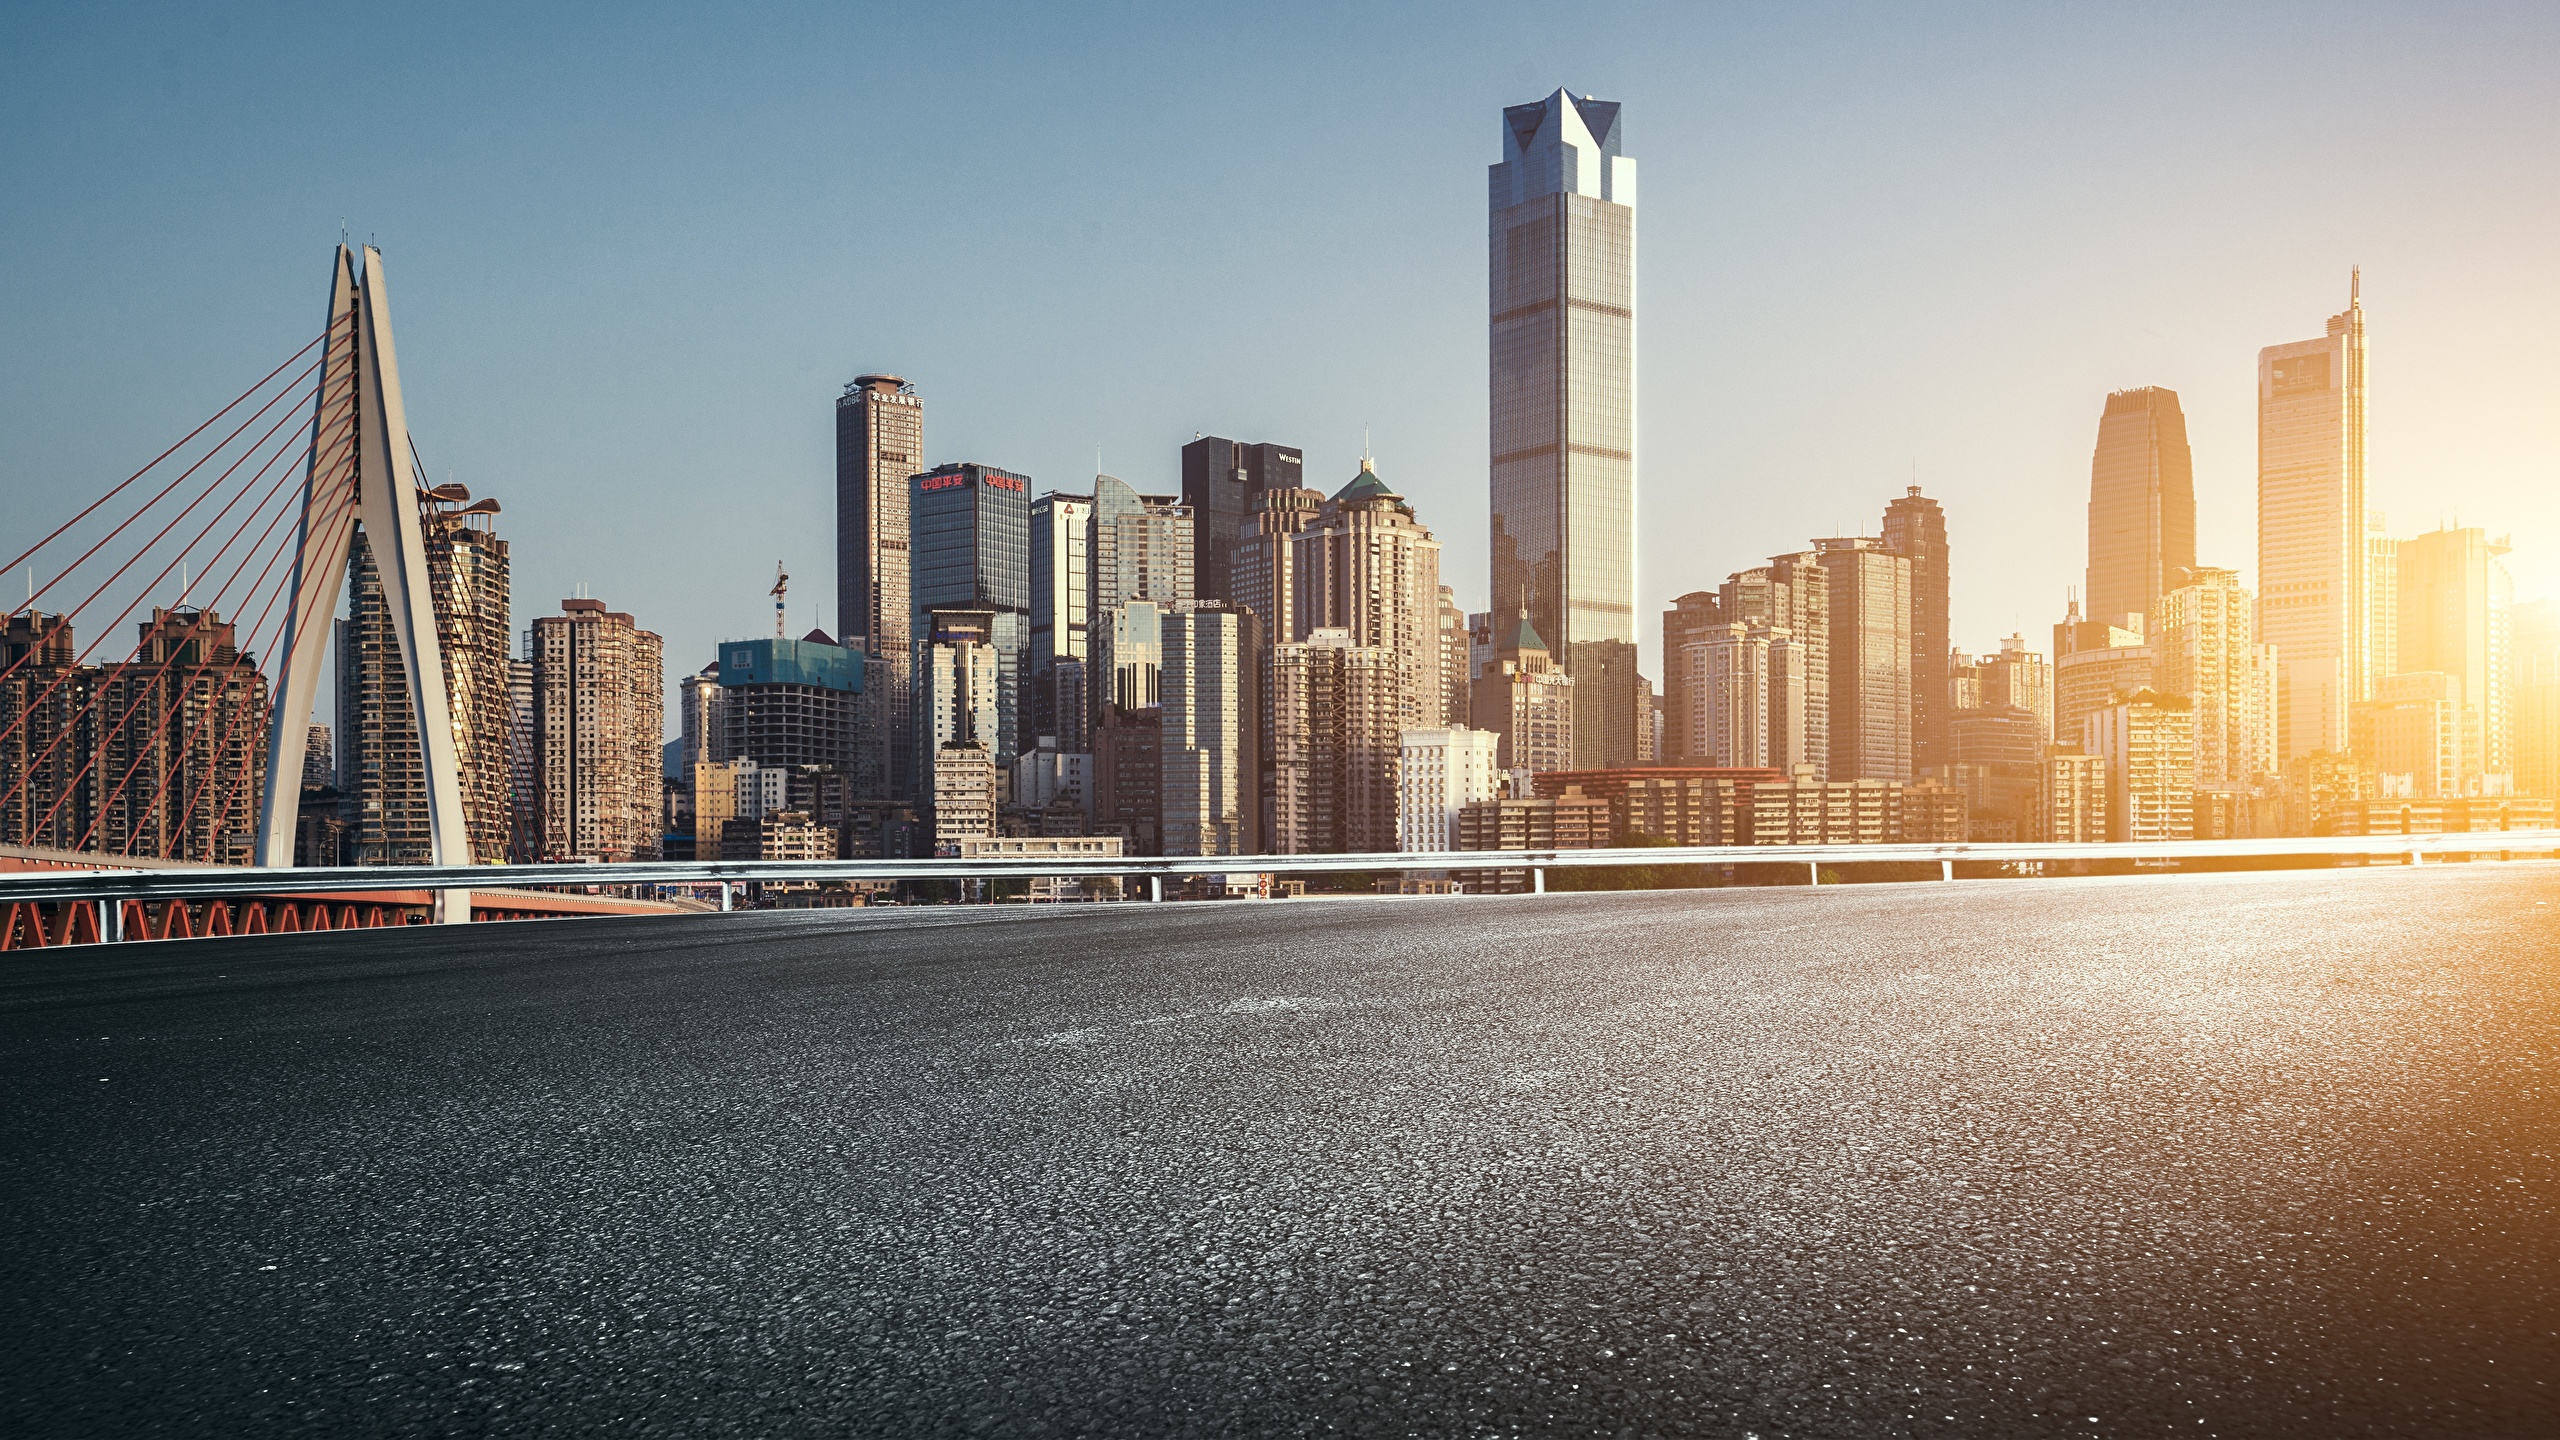 壁紙 2560x1440 海岸 住宅 橋 超高層建築物 中華人民共和国 Chongqing 都市 ダウンロード 写真